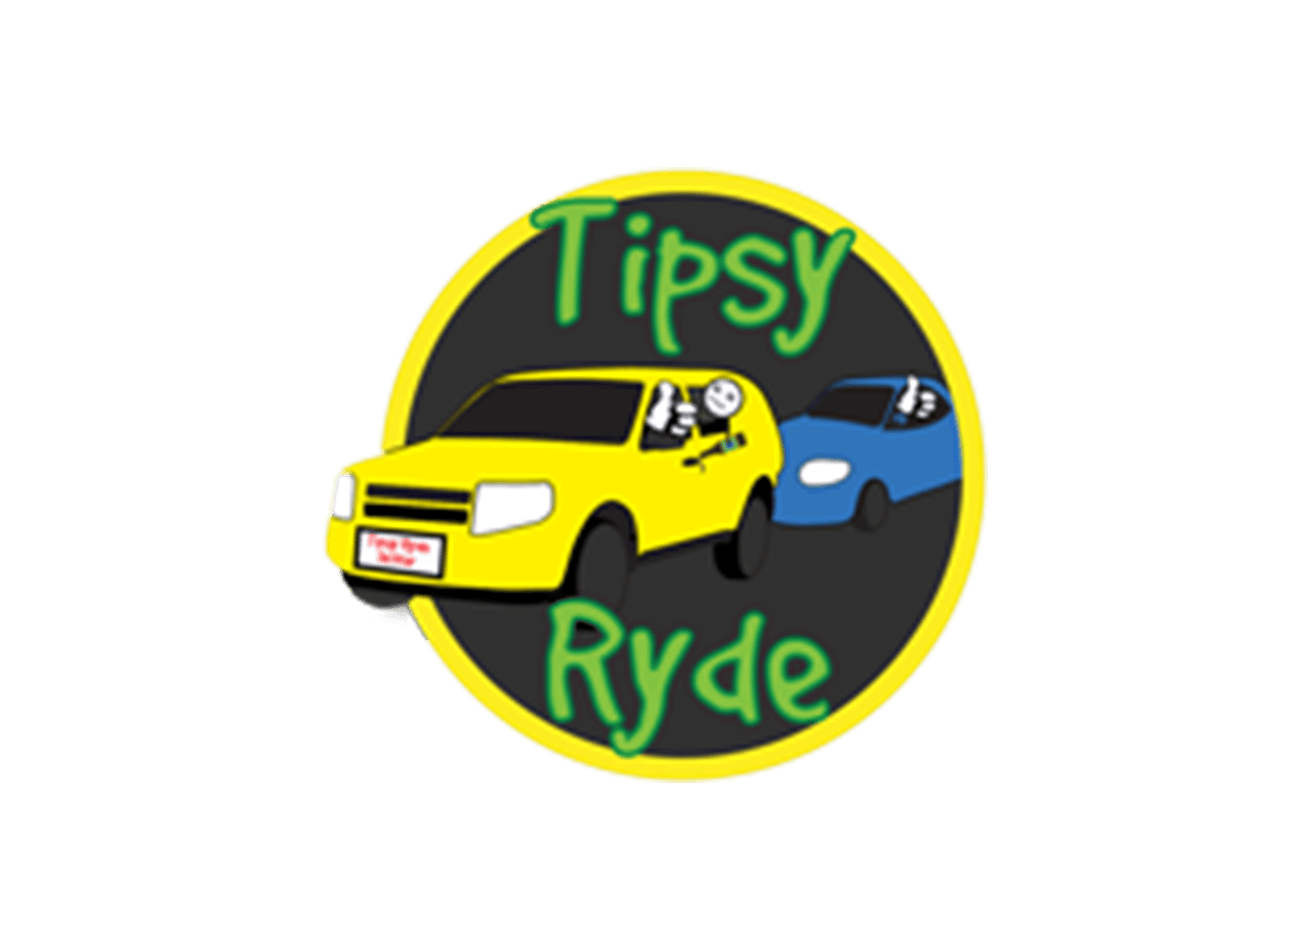 خدمة مساعدة السائق Tipyryde والتسليم على الرصيف